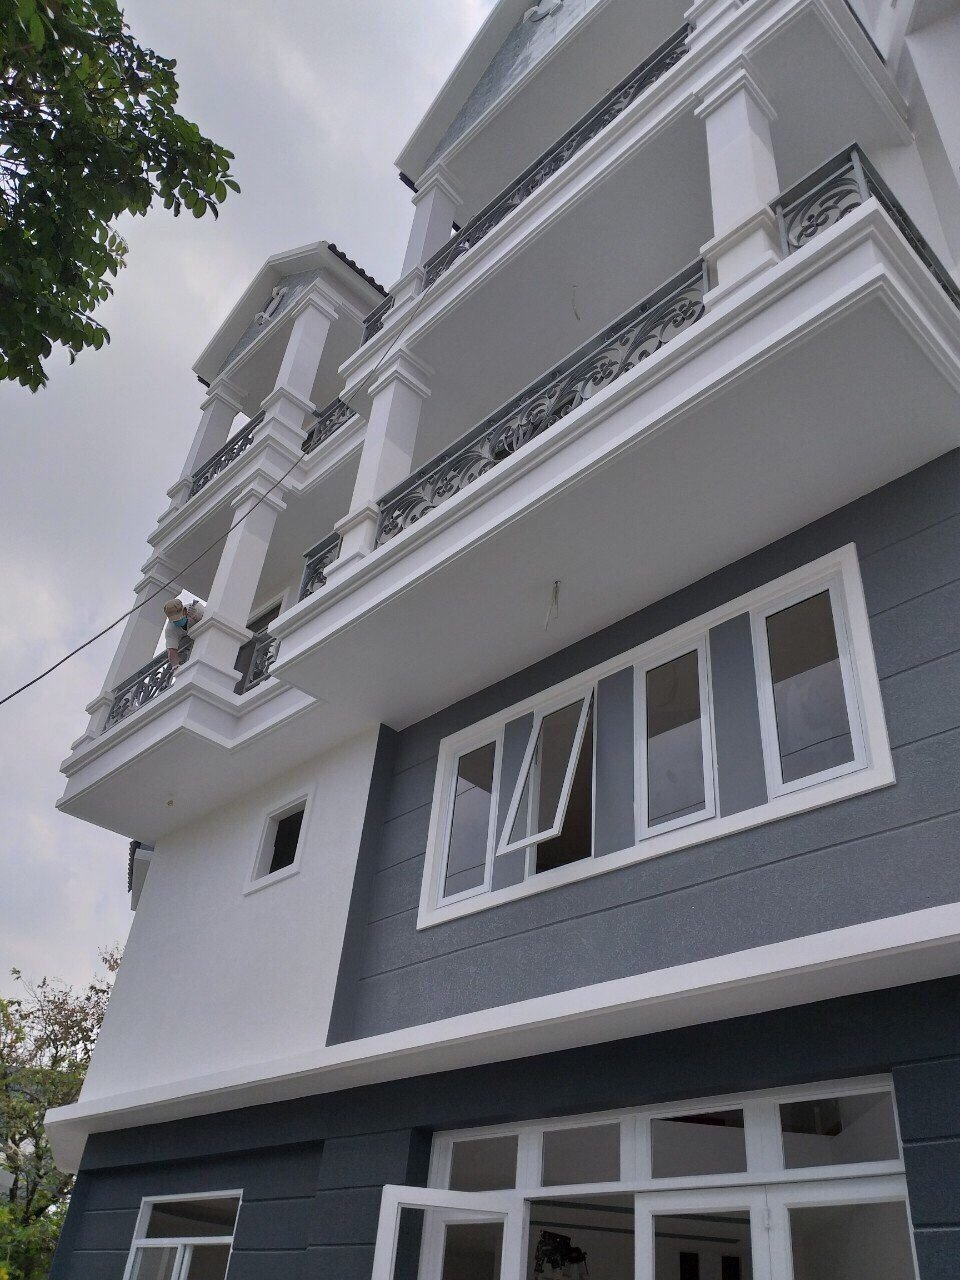 Bán nhà góc 2 mặt tiền hẻm 1135 Huỳnh Tấn Phát, Q7, DT 7x15m, 3 lầu, ST. Giá 5,9 tỷ